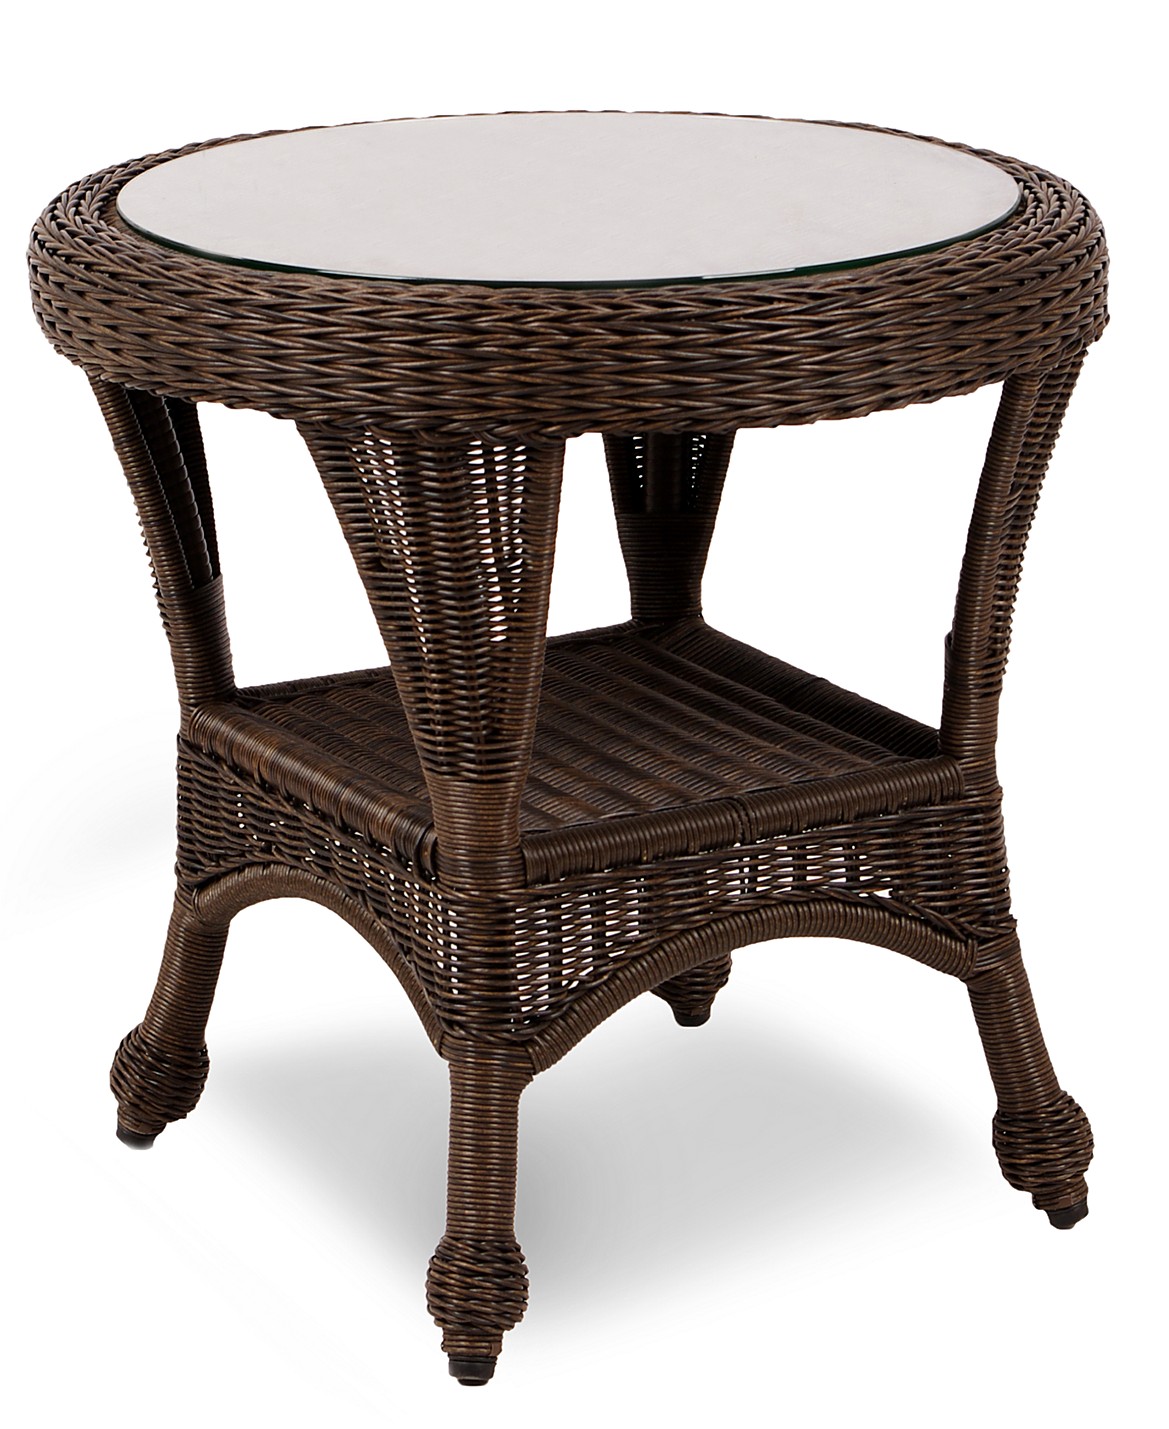 Столик ротанг купить. Wicker мебель из ротанга. Плетеный столик. Журнальный столик плетеный. Столик ротанг.